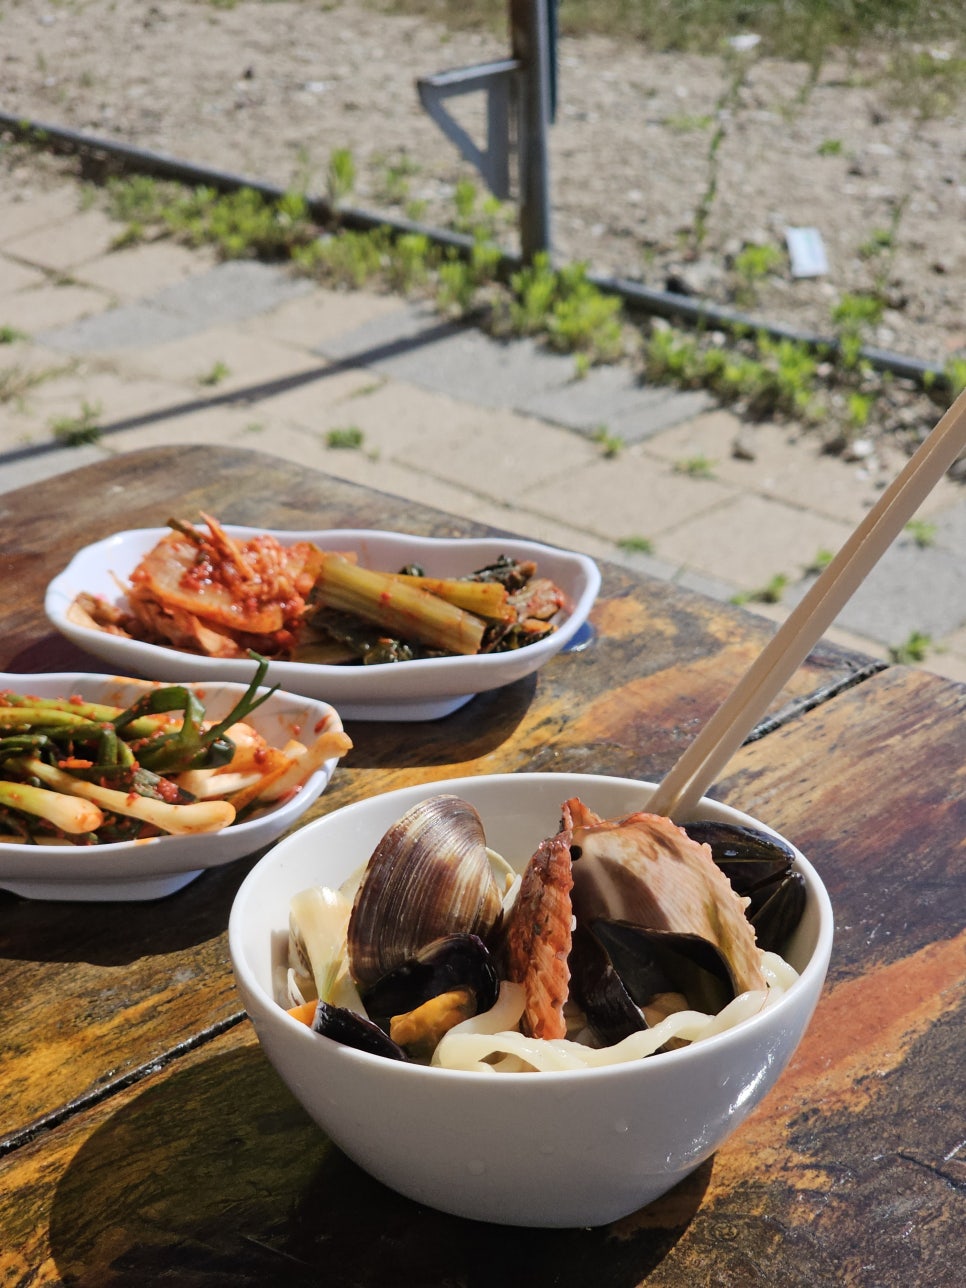 인천 네스트호텔 맛집 물회 칼국수 맛있는 을왕리 조개구이